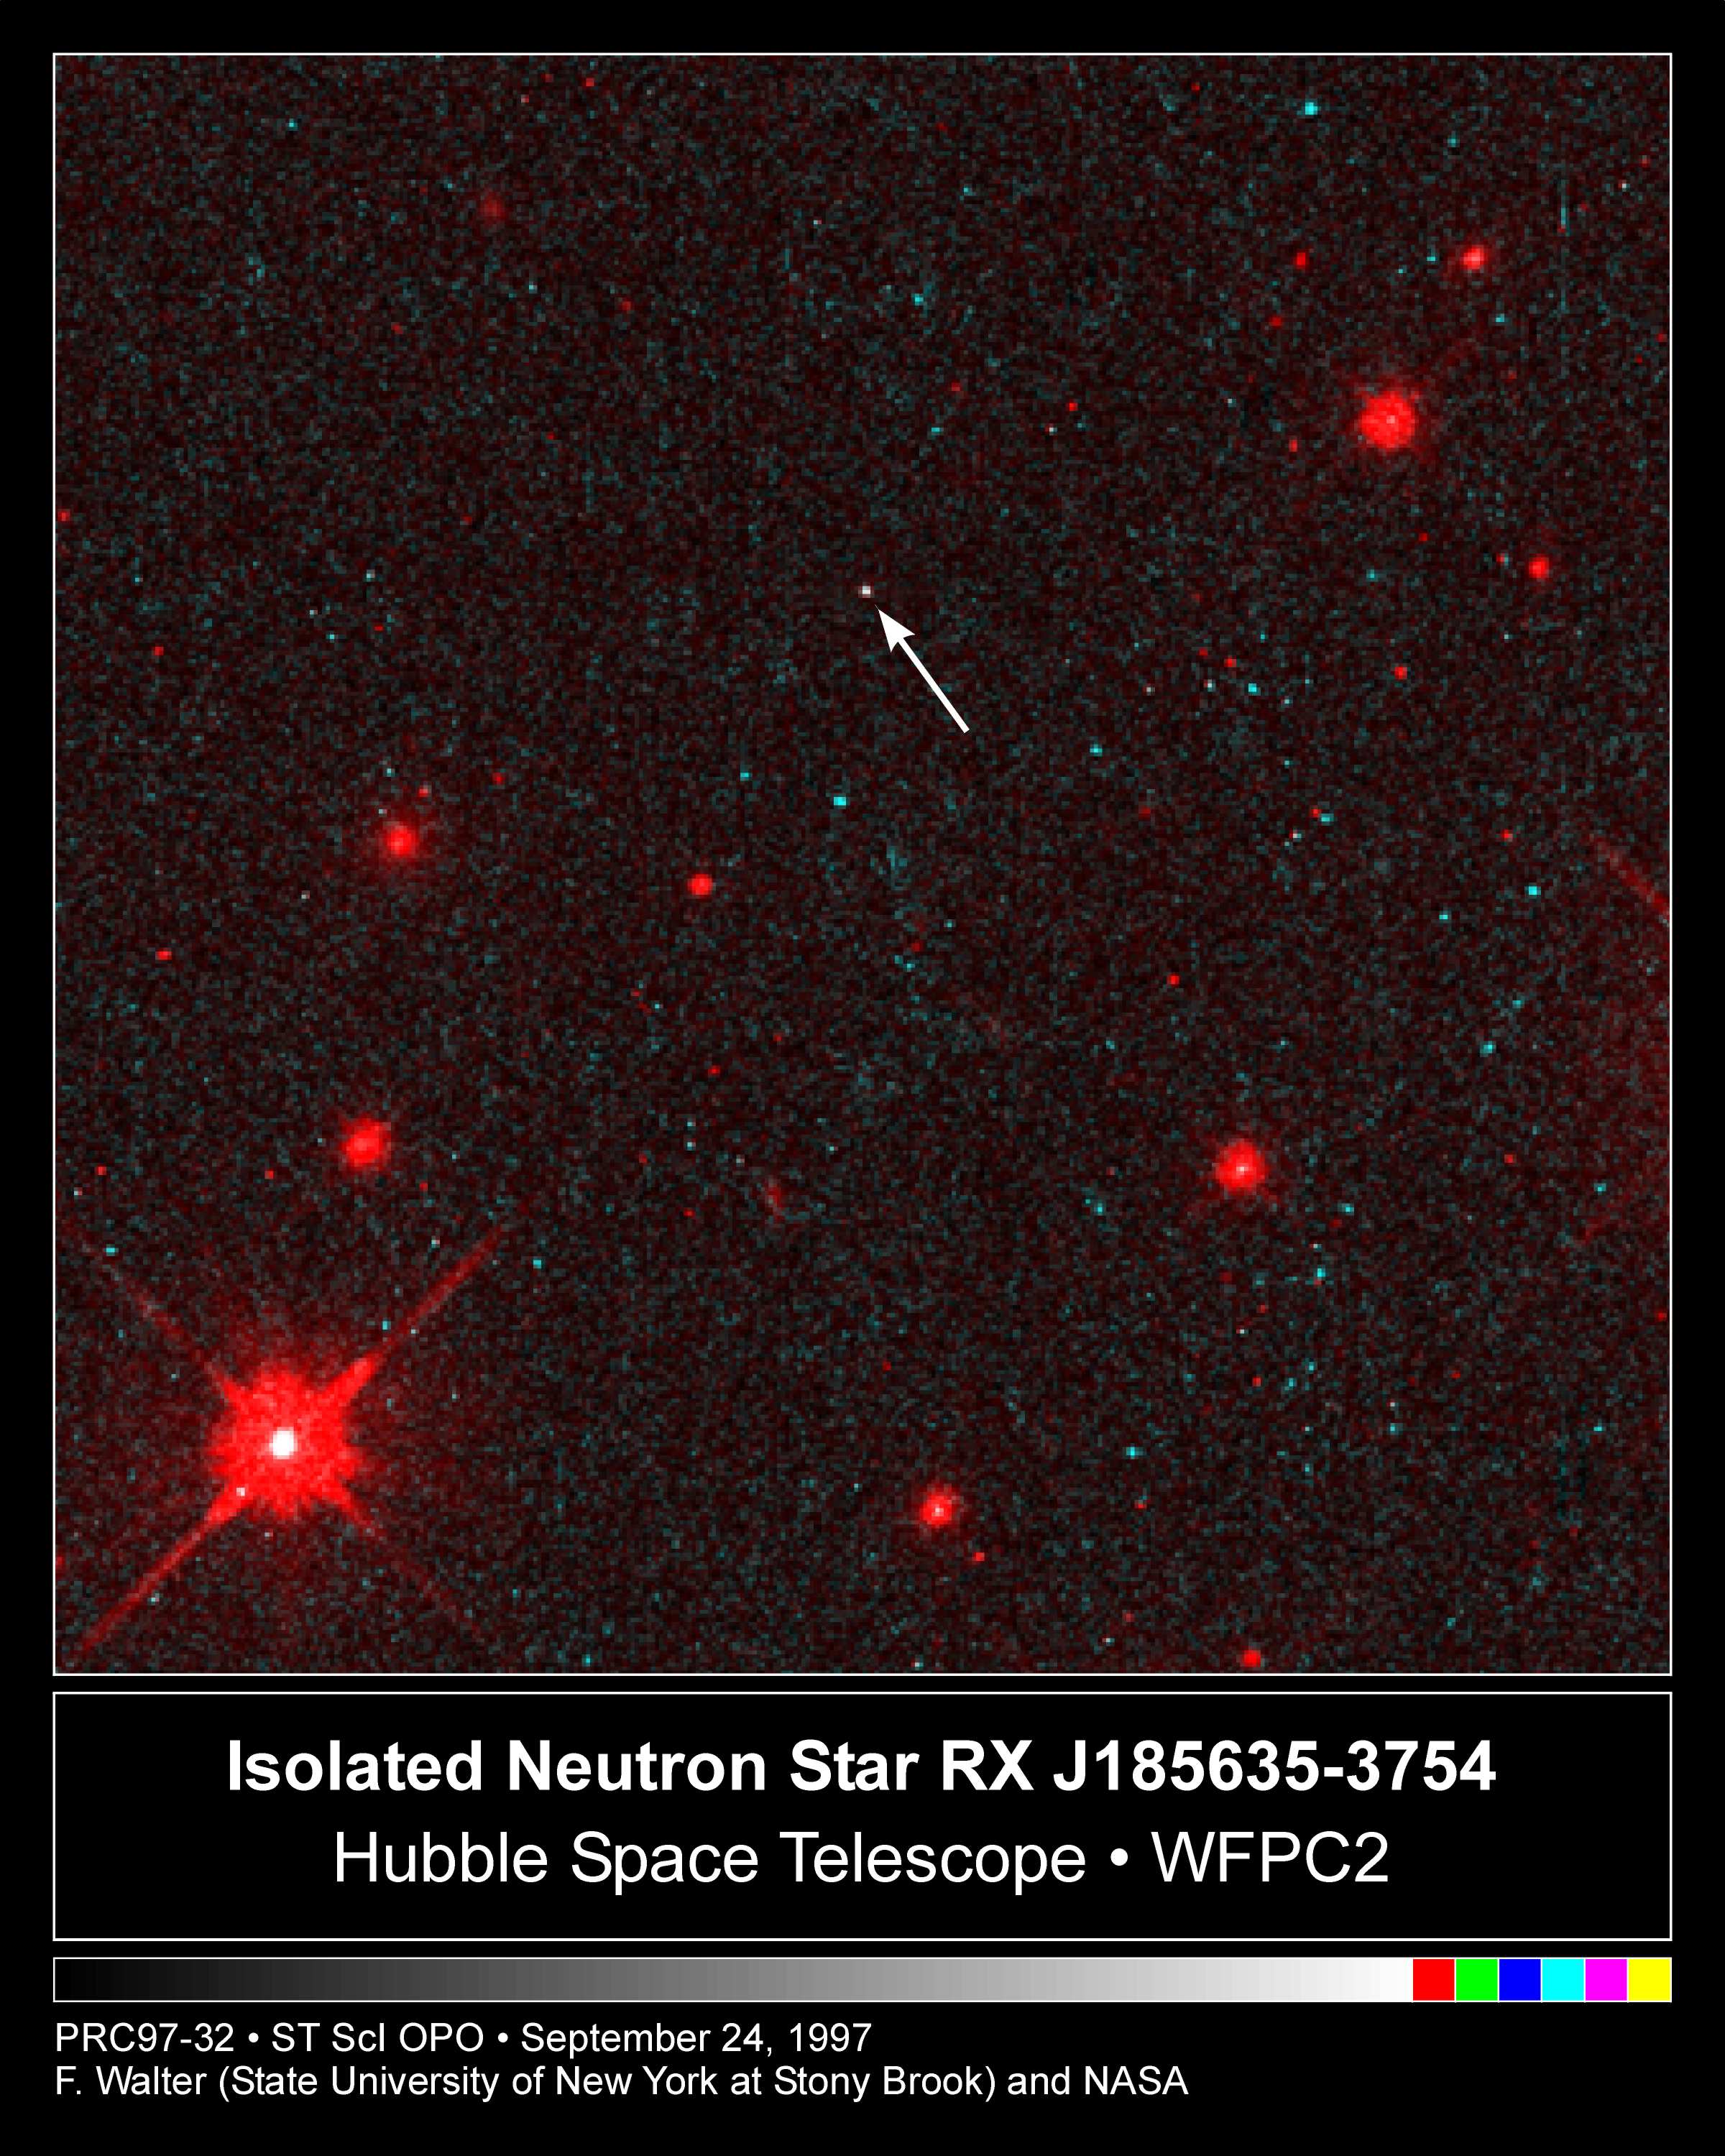 https://neutronstars.utk.edu/info/images/rxj1856.jpg